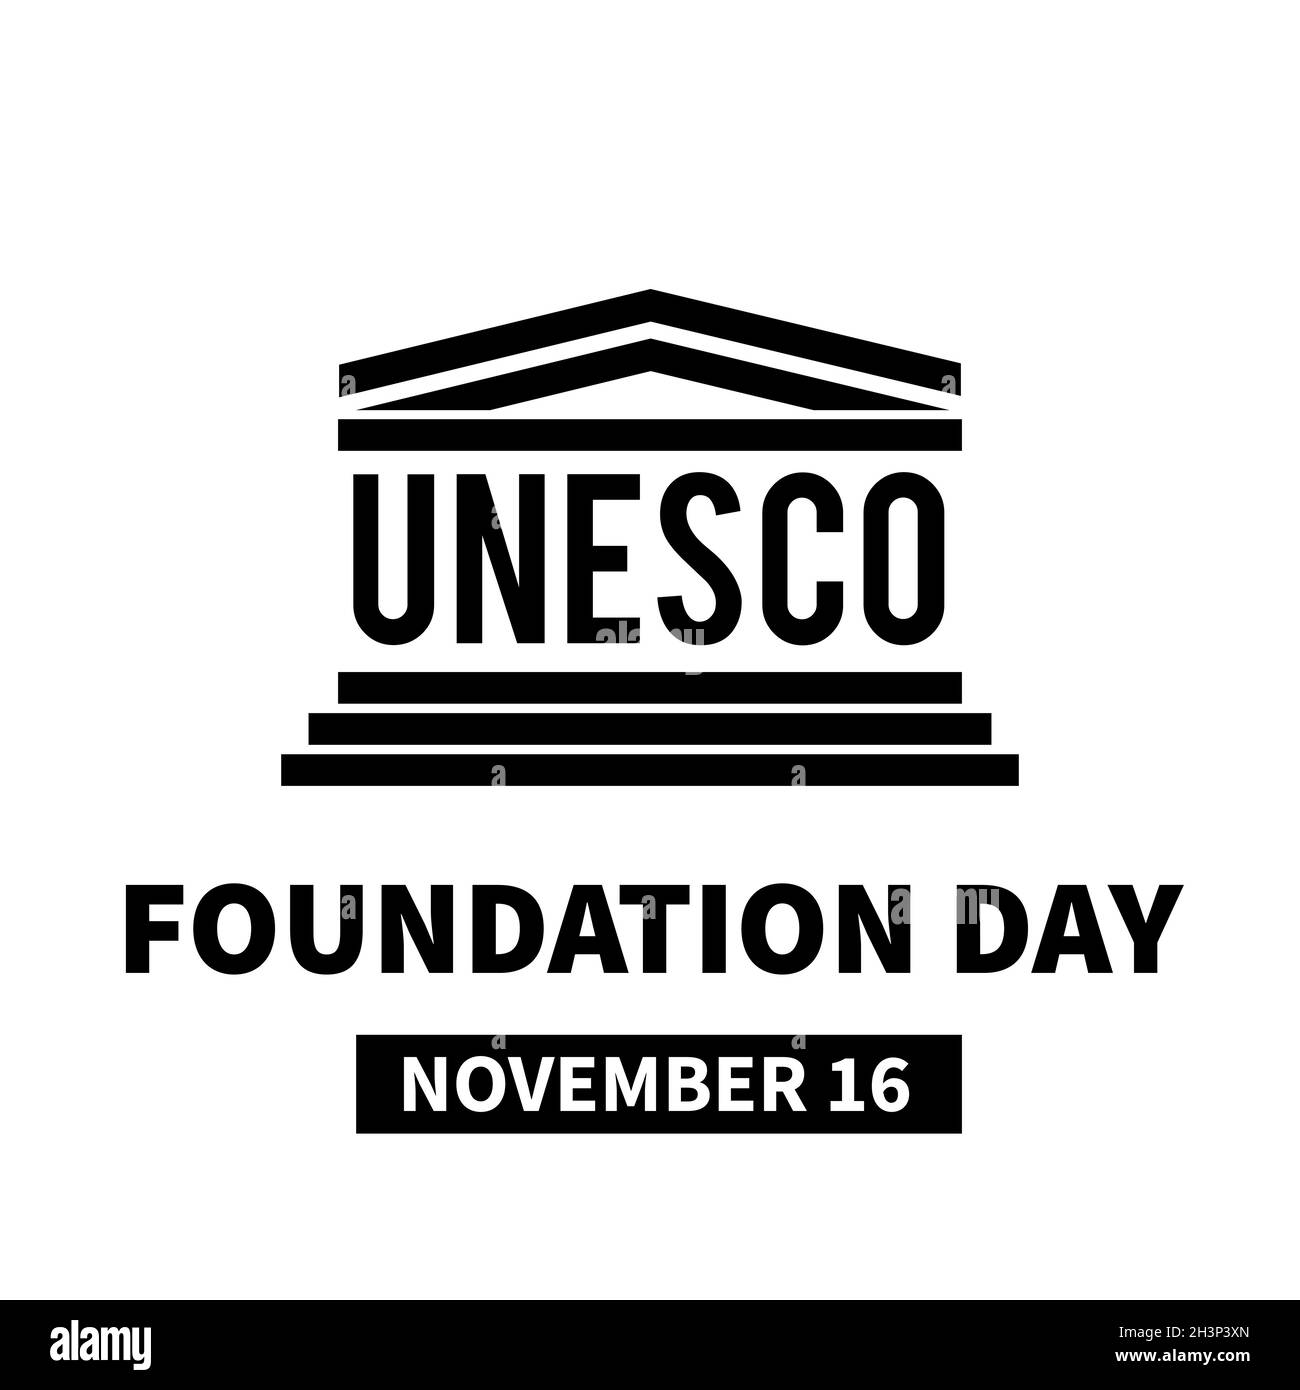 Tag der UNESCO-Stiftung am 16. November. Organisation der Vereinten Nationen für Bildung, Wissenschaft und Kultur. Vektorvorlage für Typografie Poster, Banner, Stock Vektor